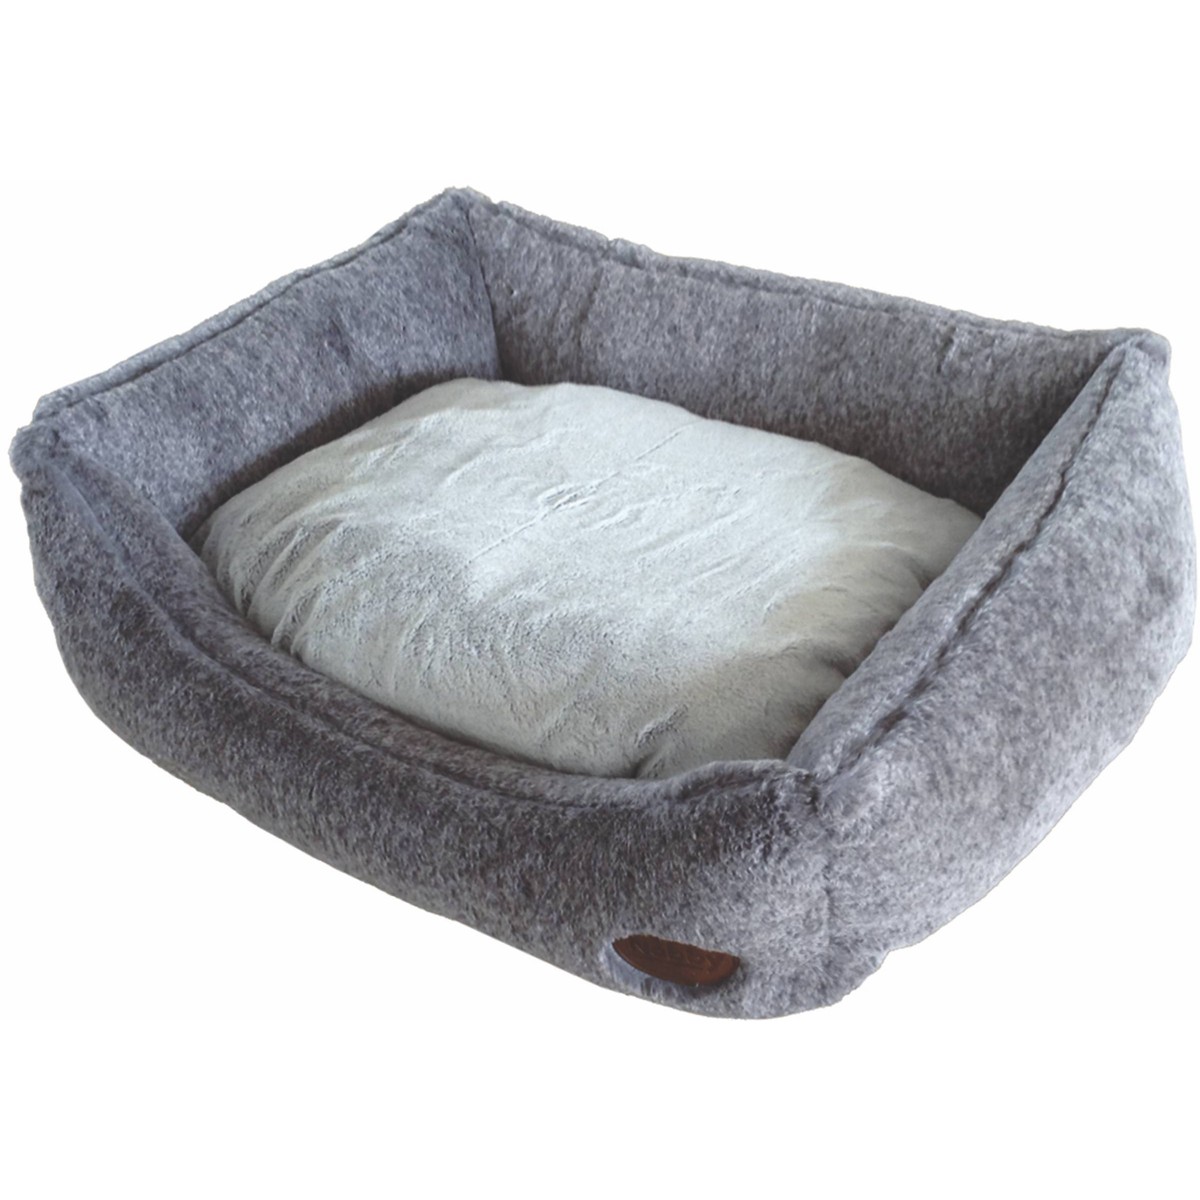   Lit comfort Soft peluche CUDDLY, 45 x 40x H 19 cm, gris clair  